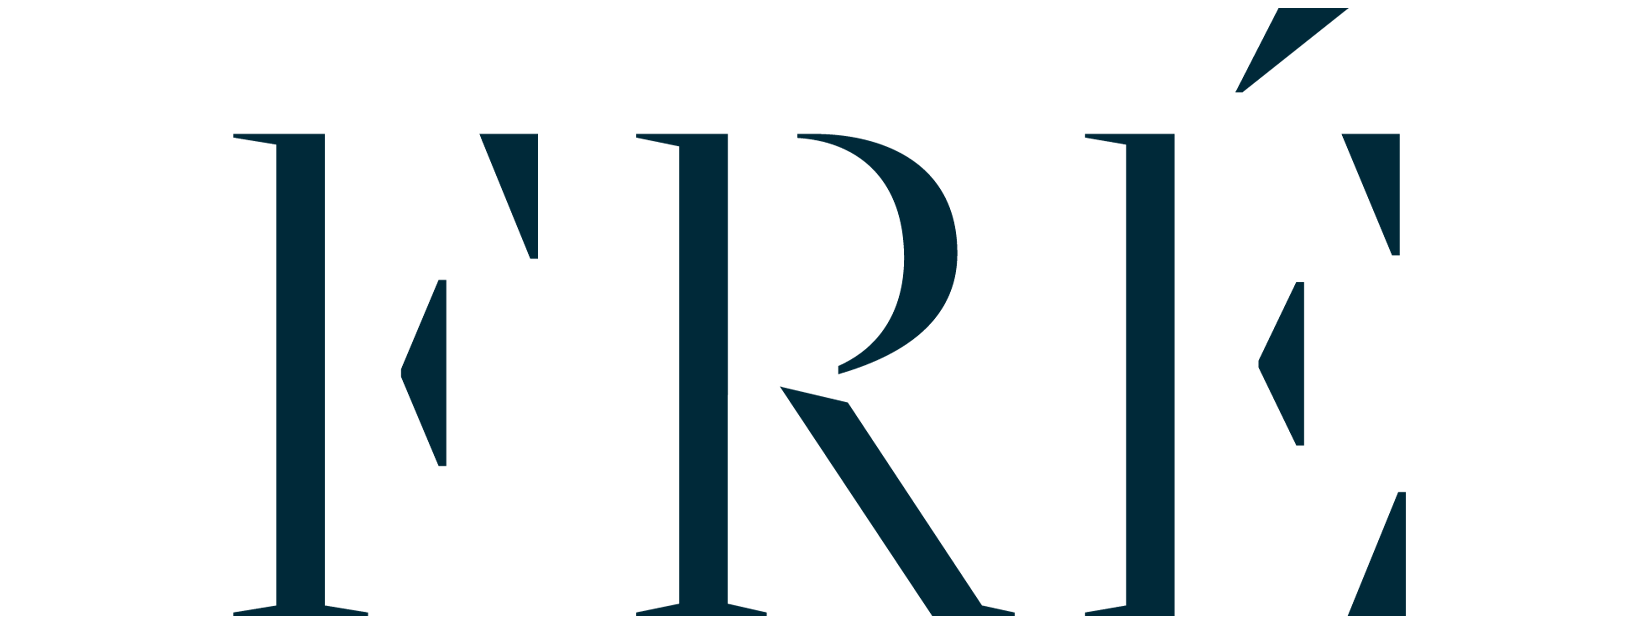 FRÉ Skincare Help Center logo